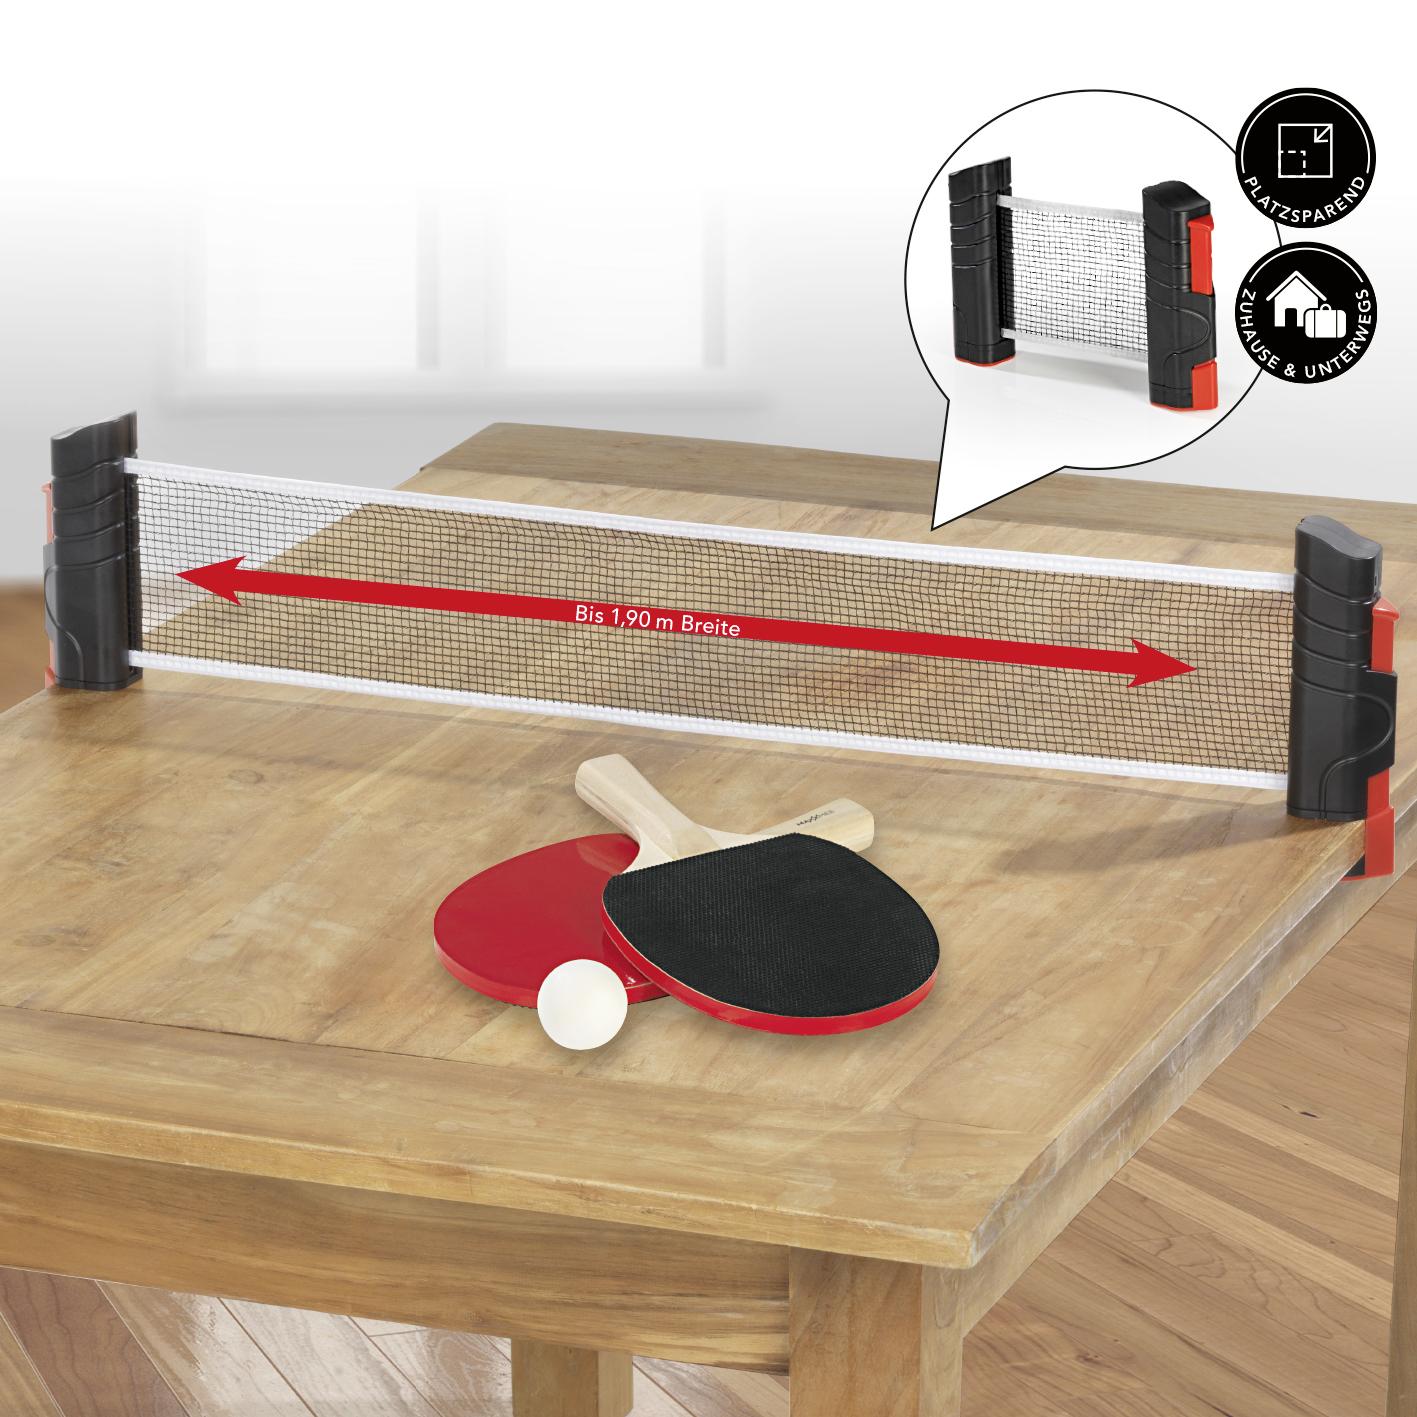 Tischtennis-Set mit Netz, 2 Schläger, 2 Bälle, Rot/Schwarz - Rot/Schwarz, Basics, Holz/Kunststoff (14,8/25,5/1,1cm)